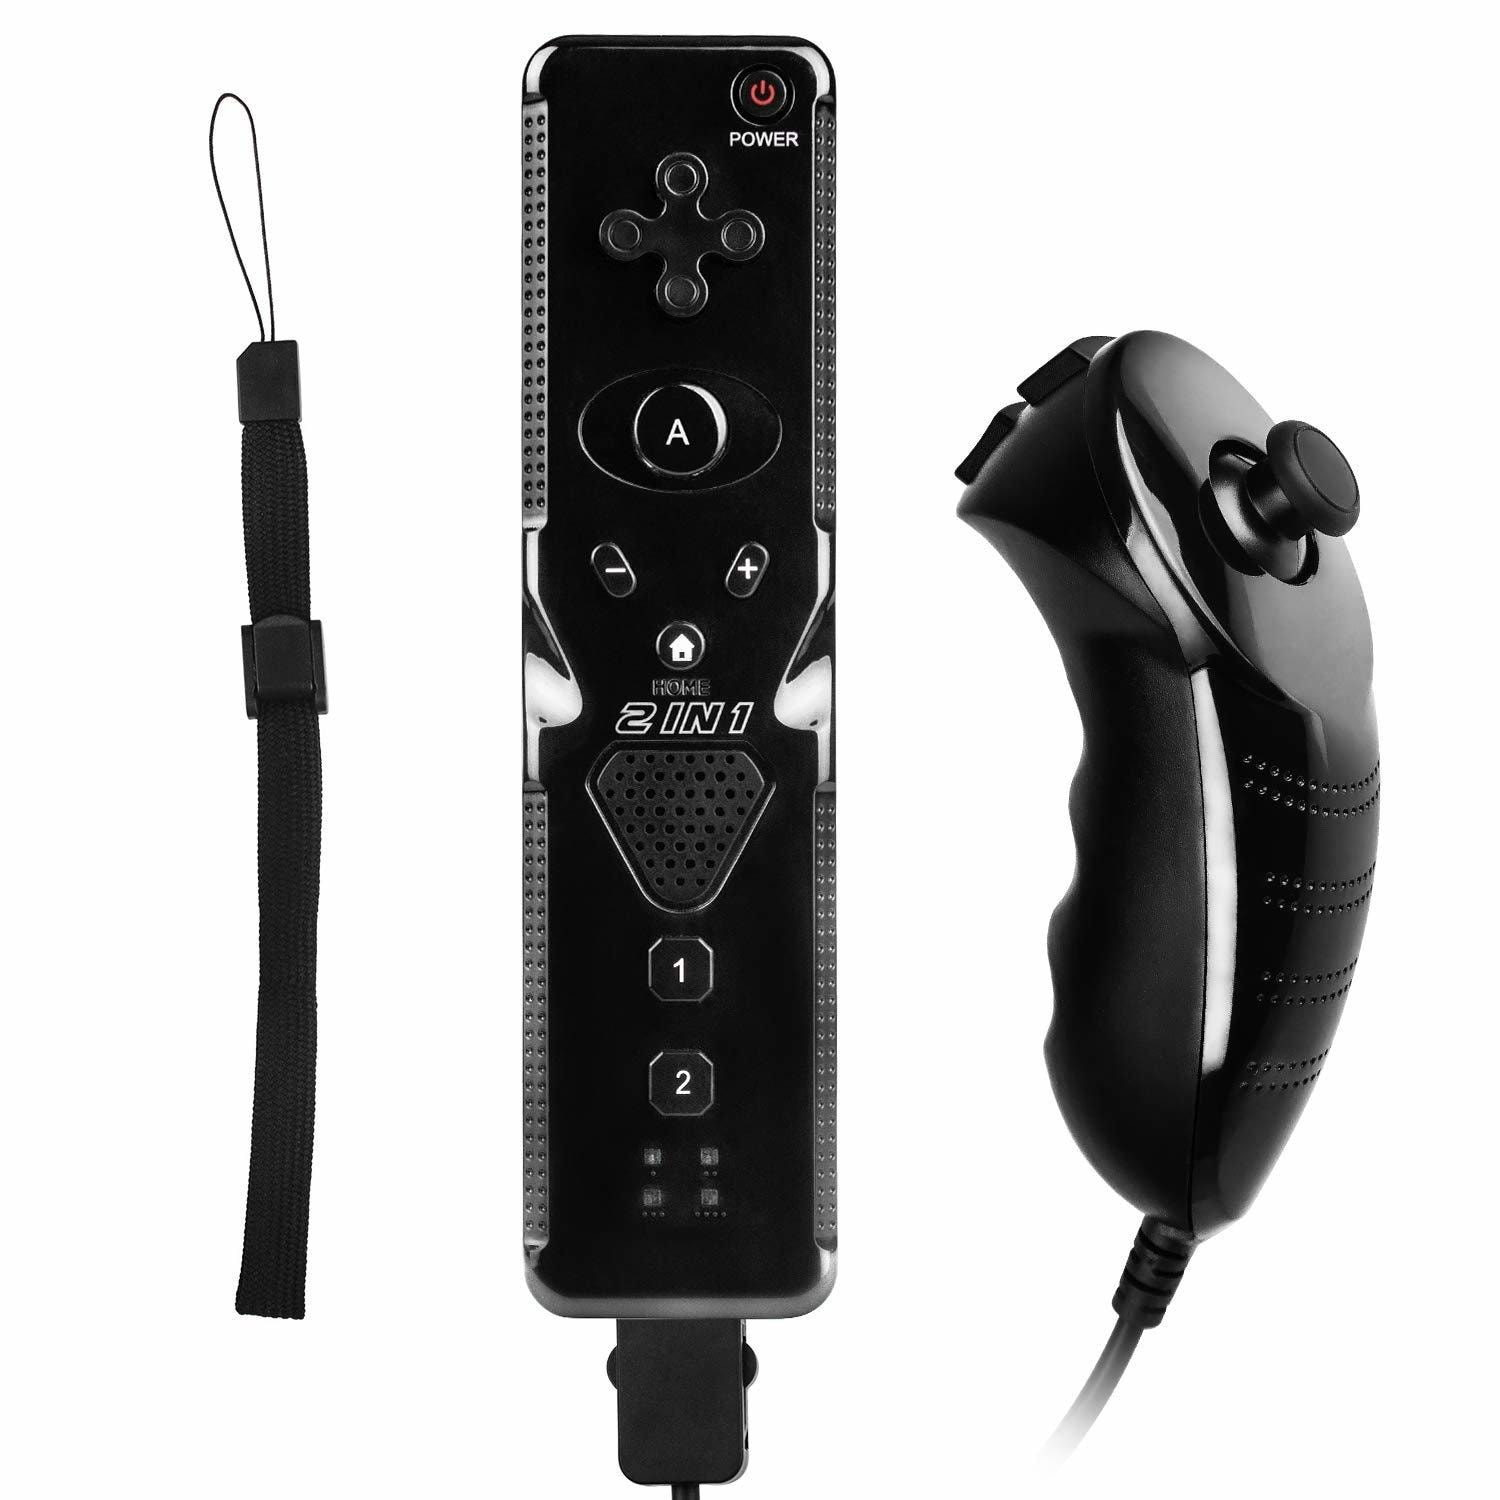 Wii Remote Plus och Nunchuk controller 6-axis (1 av 15)